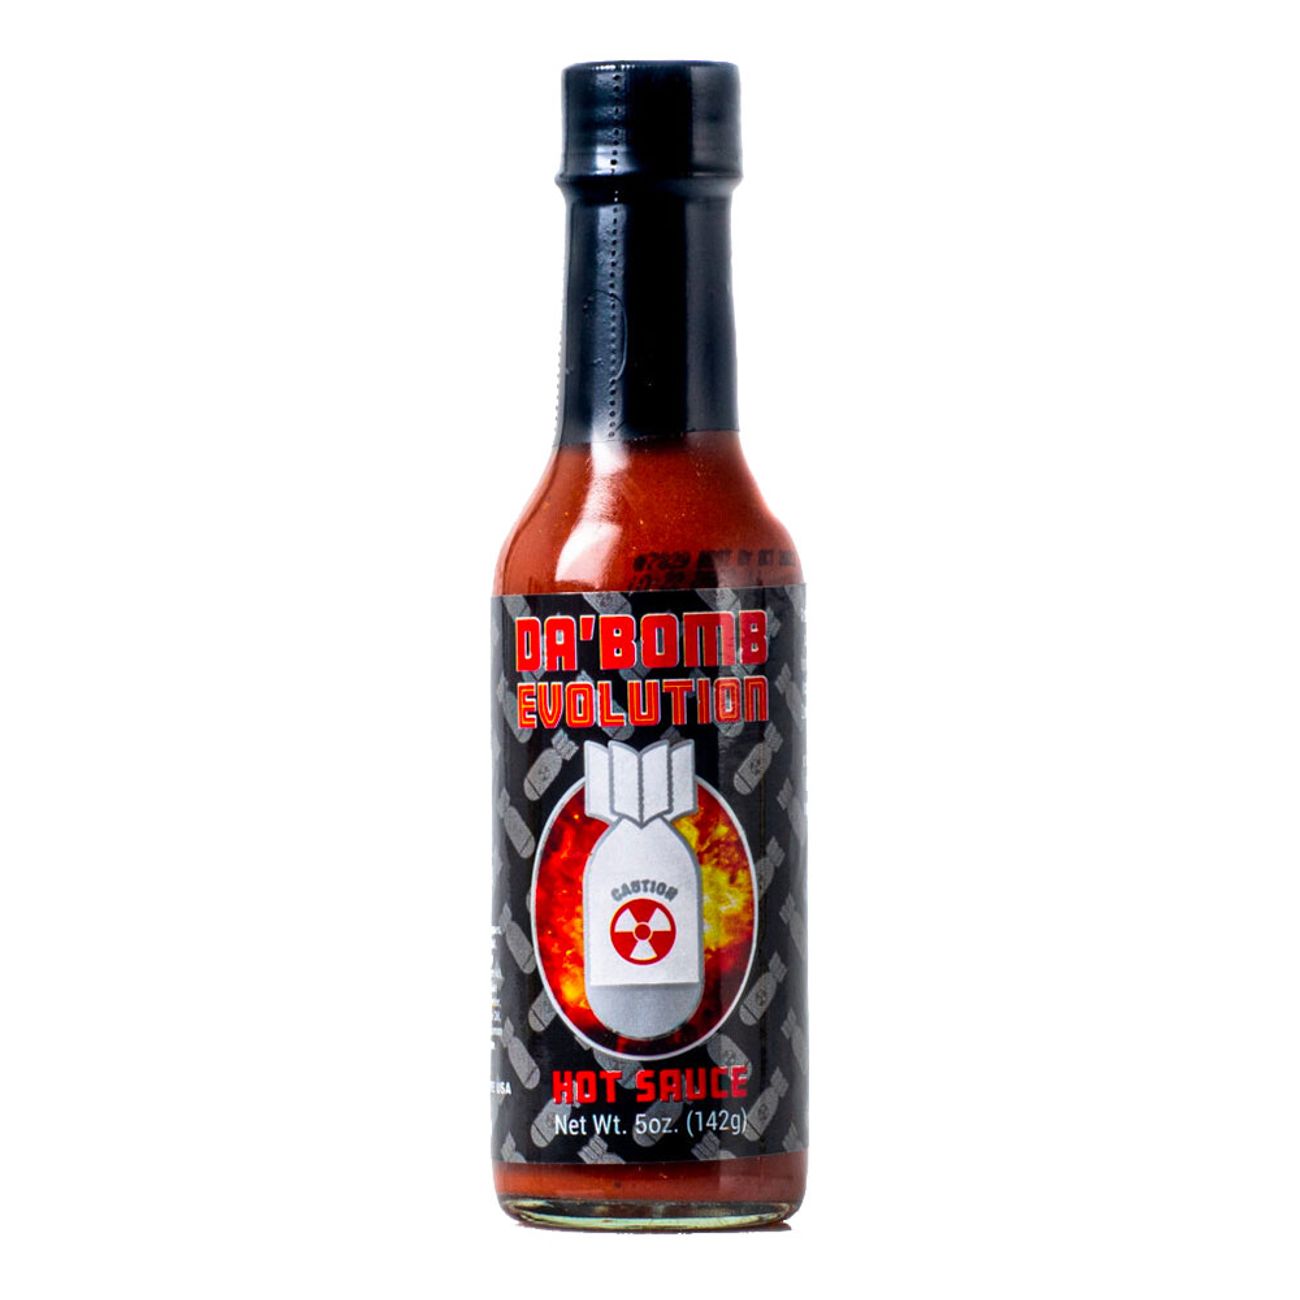 chili-klaus-hot-sauce-da-bomb-evolution-73106-1